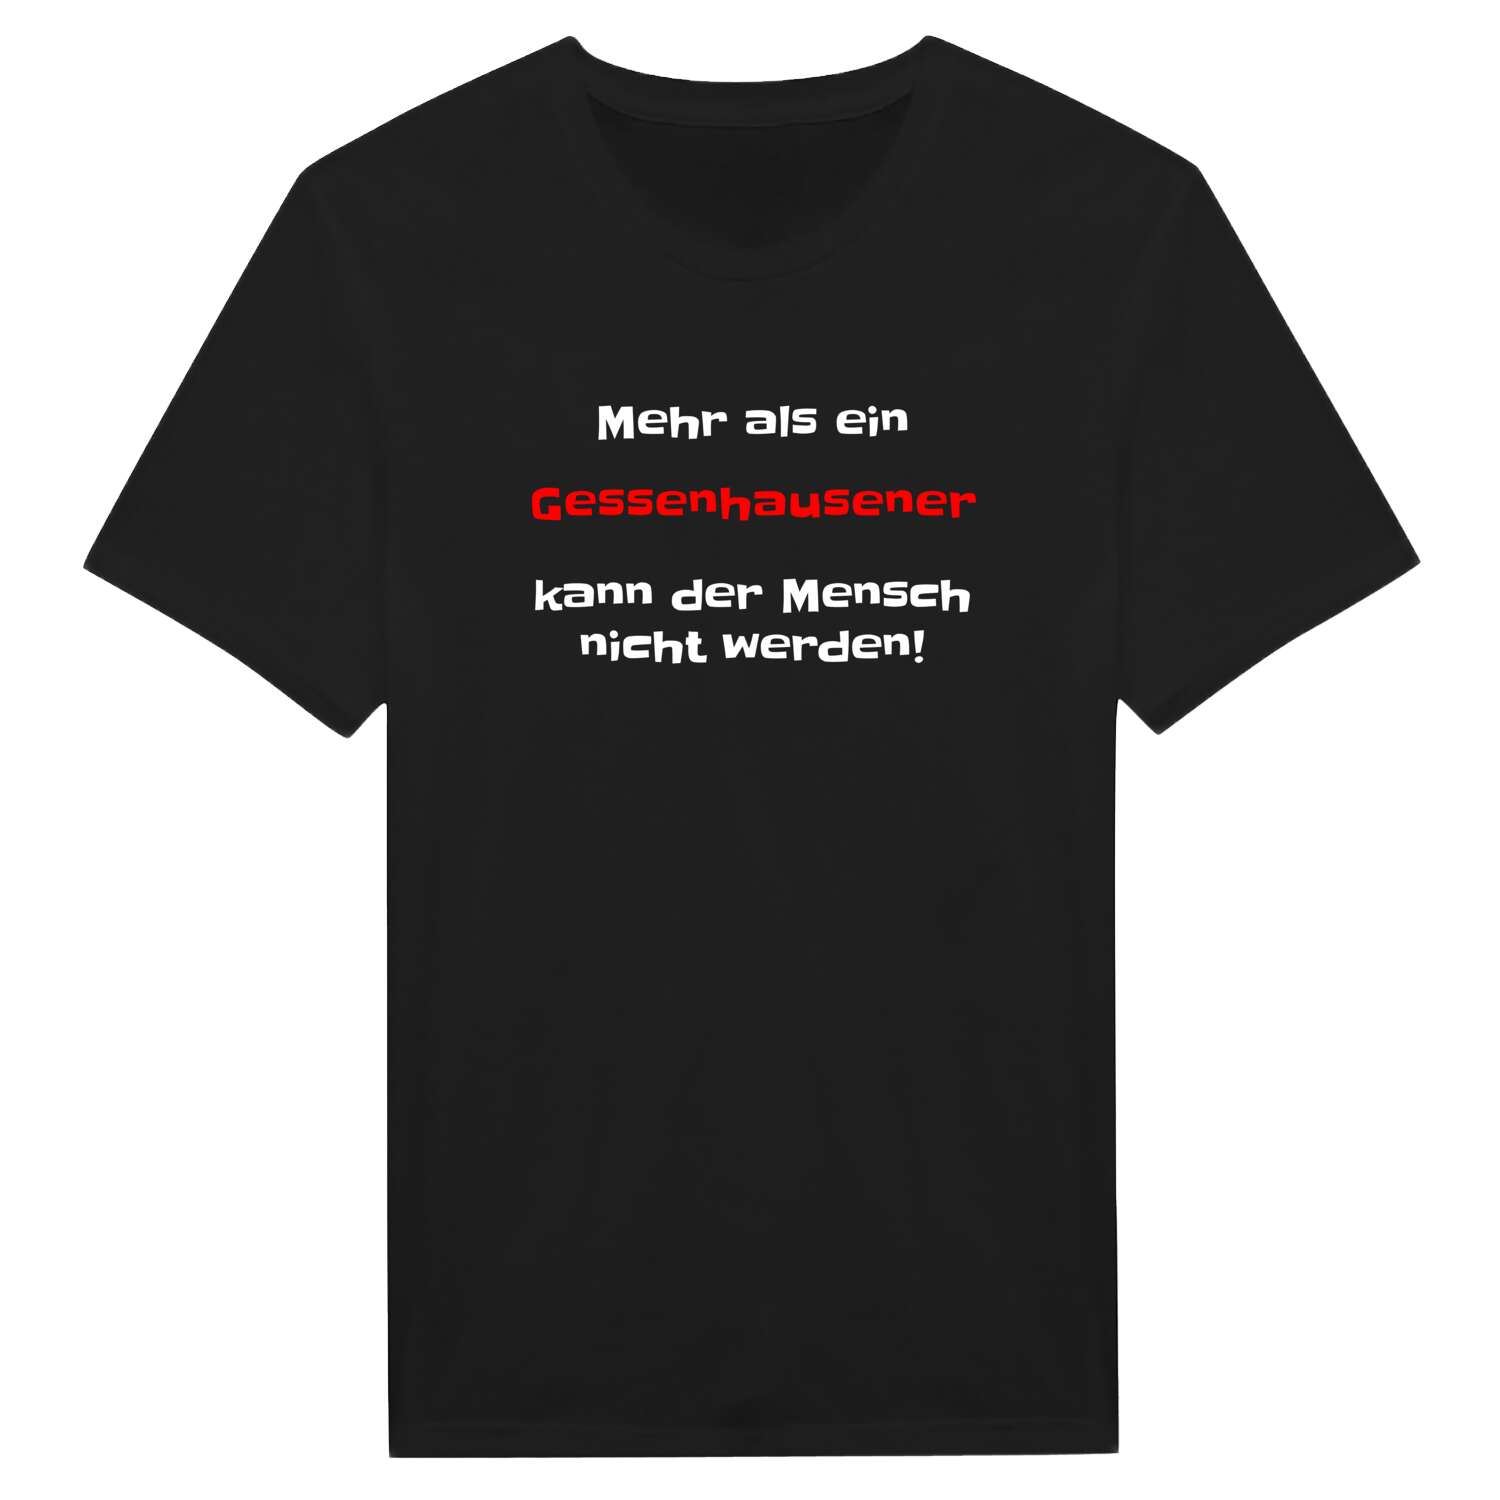 Gessenhausen T-Shirt »Mehr als ein«